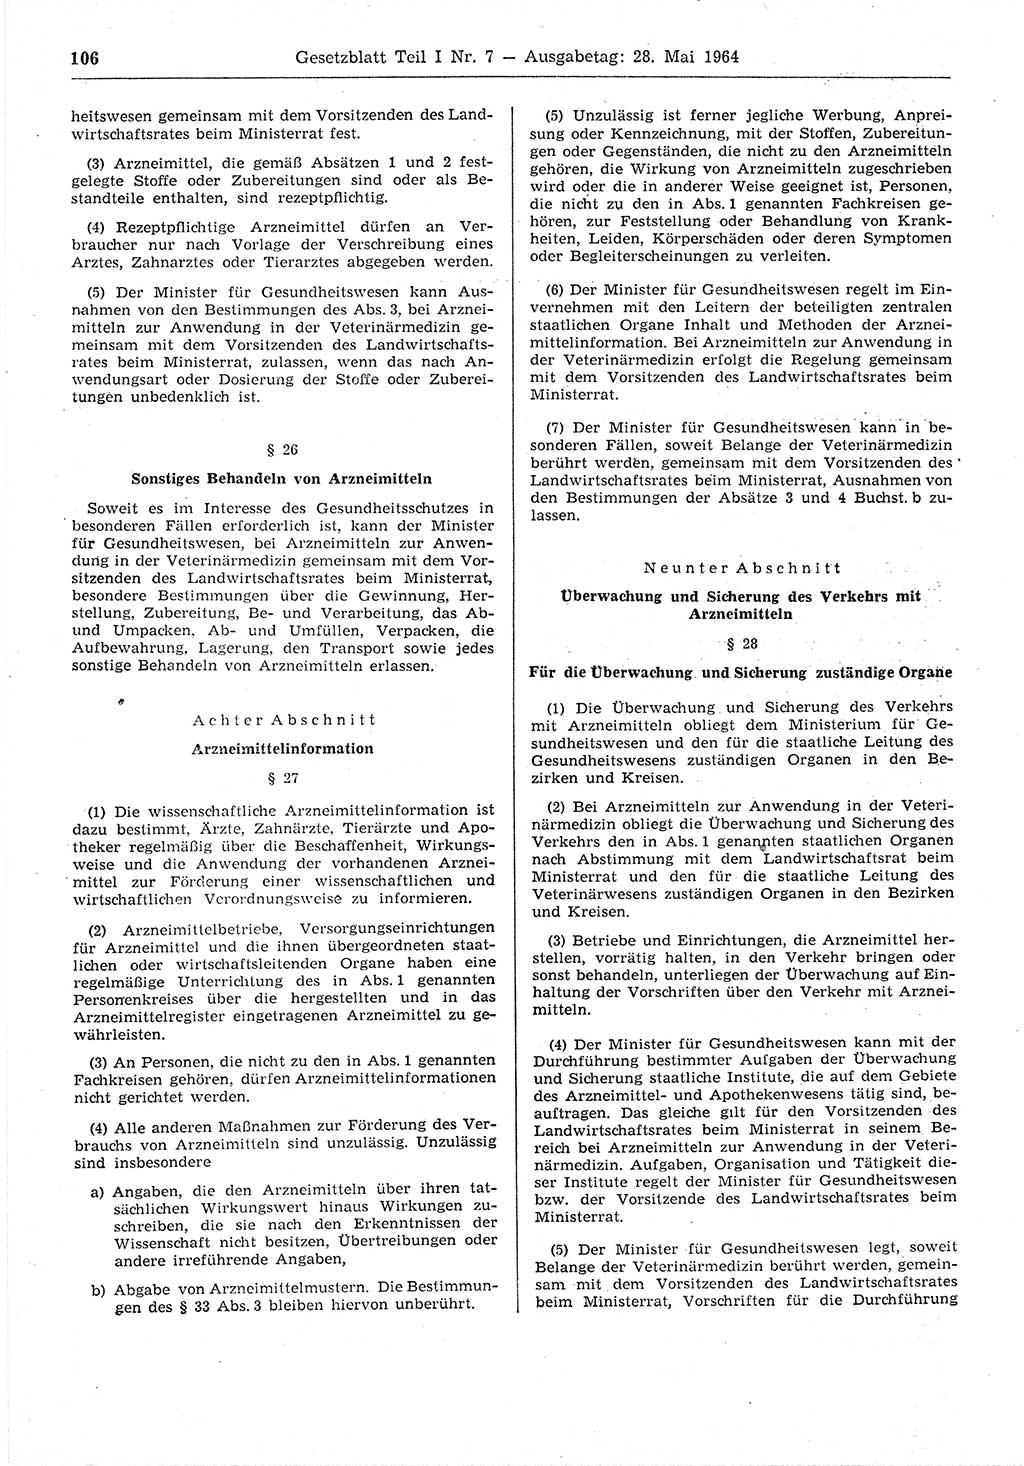 Gesetzblatt (GBl.) der Deutschen Demokratischen Republik (DDR) Teil Ⅰ 1964, Seite 106 (GBl. DDR Ⅰ 1964, S. 106)